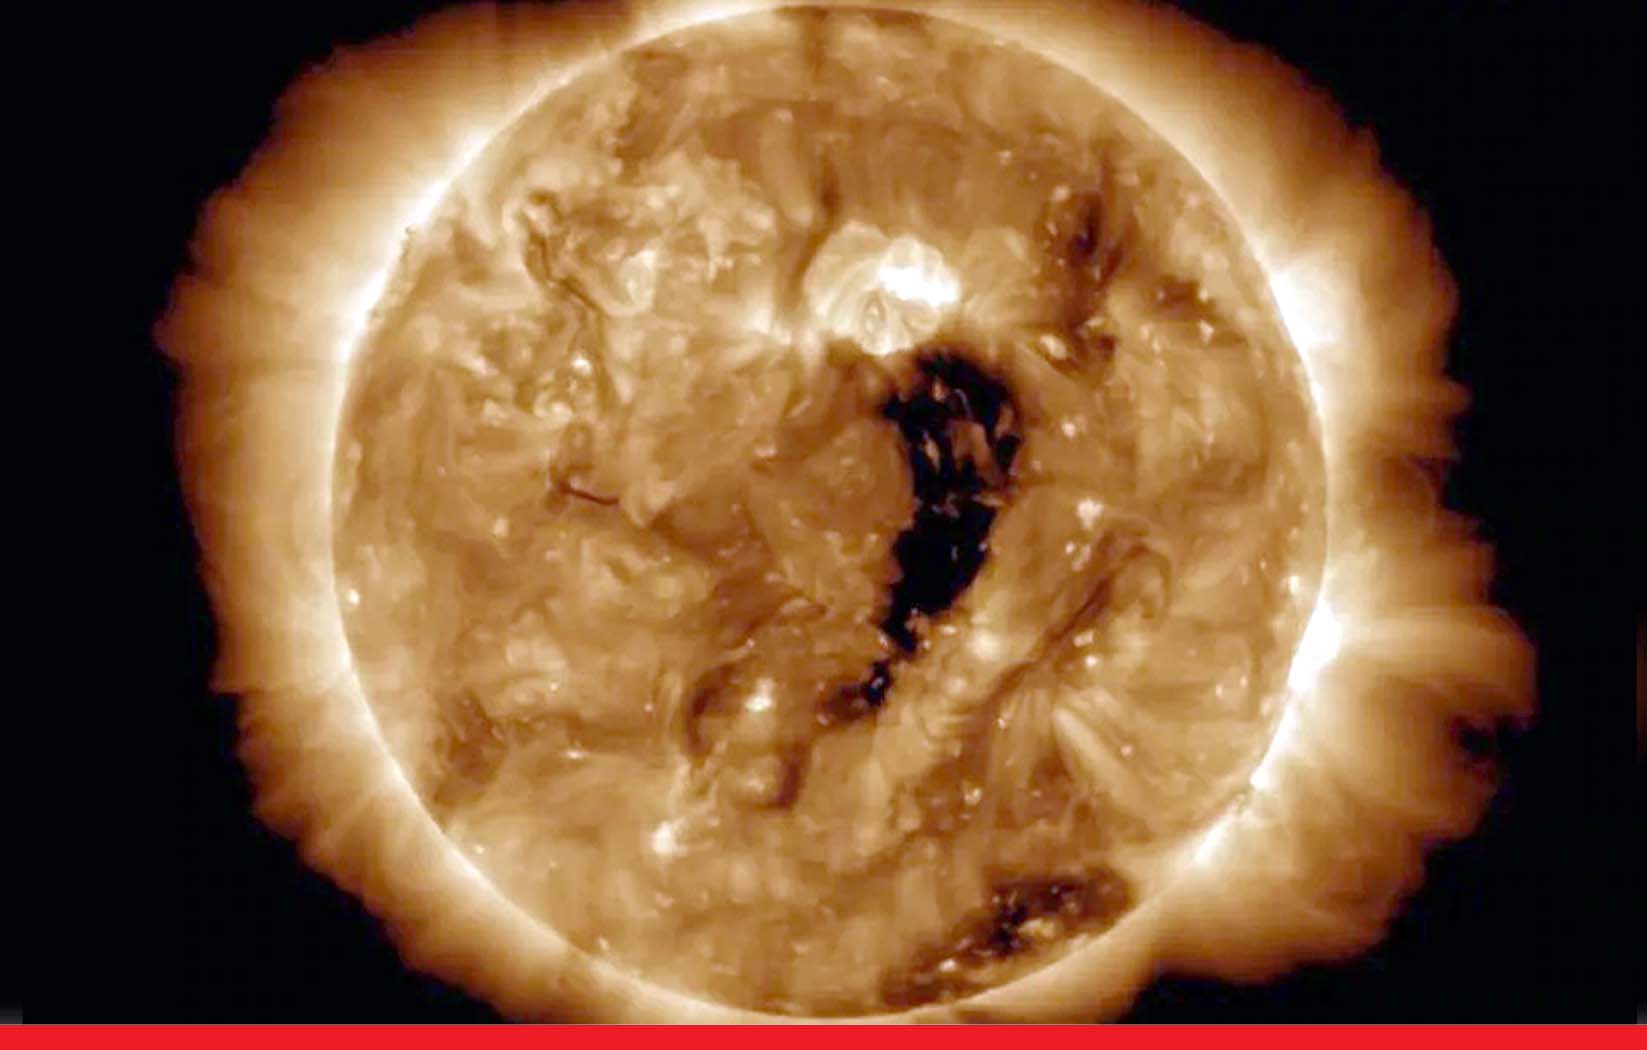 सूरज टूट रहा है, कई जगहों पर हुए विशालकाय गड्ढे, धरती पर आ सकता है सौर तूफान